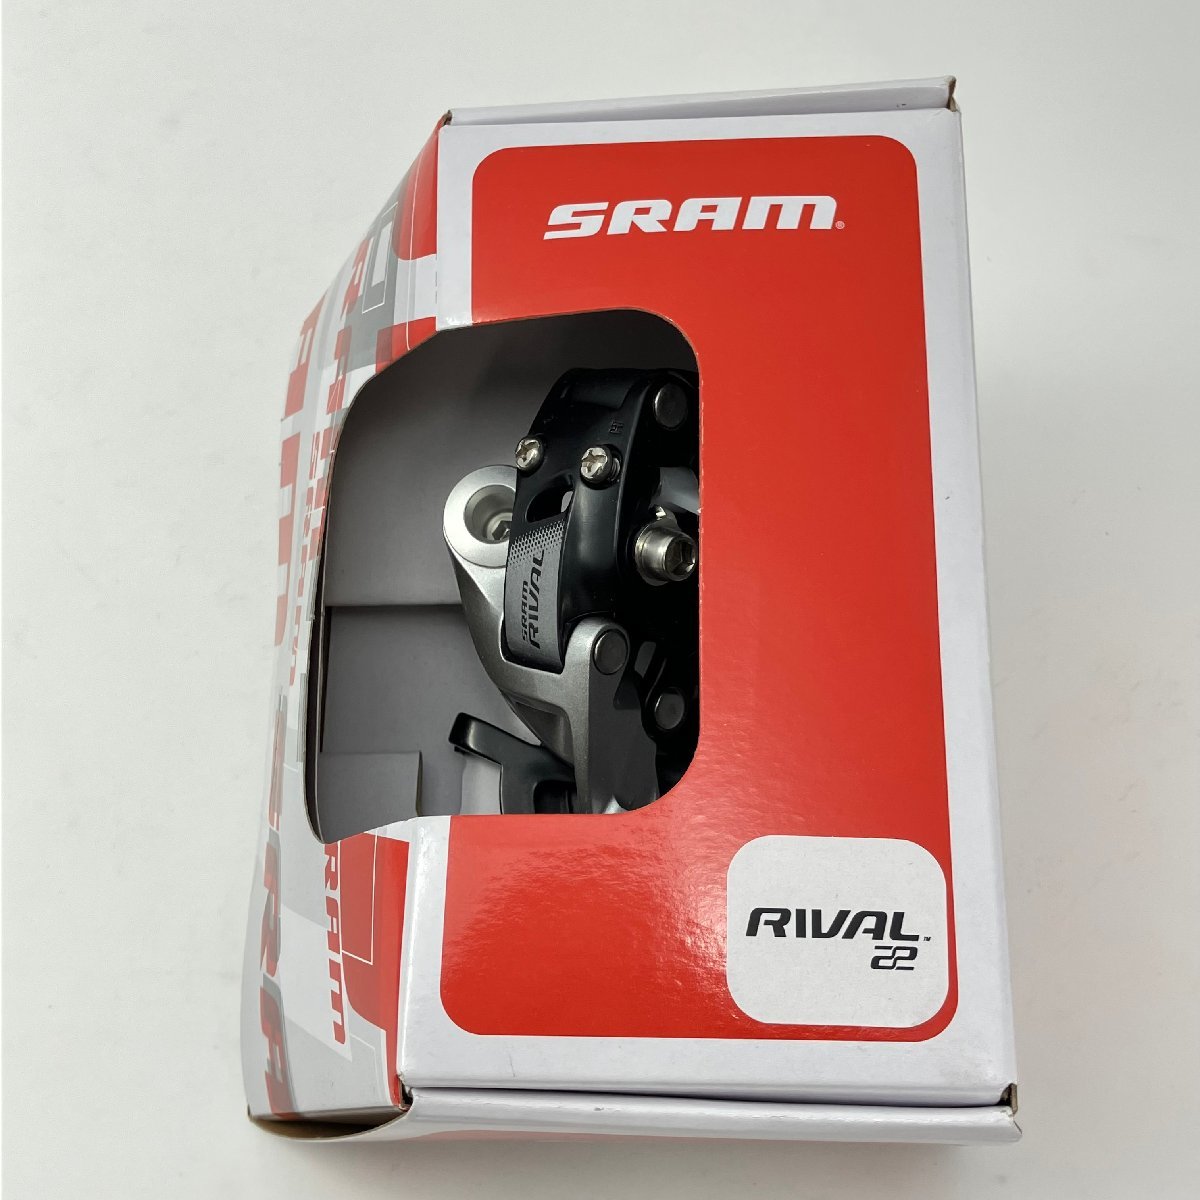 SRAM RIVAL 22 リアディレイラー MAX 28T 00.7518.043.000